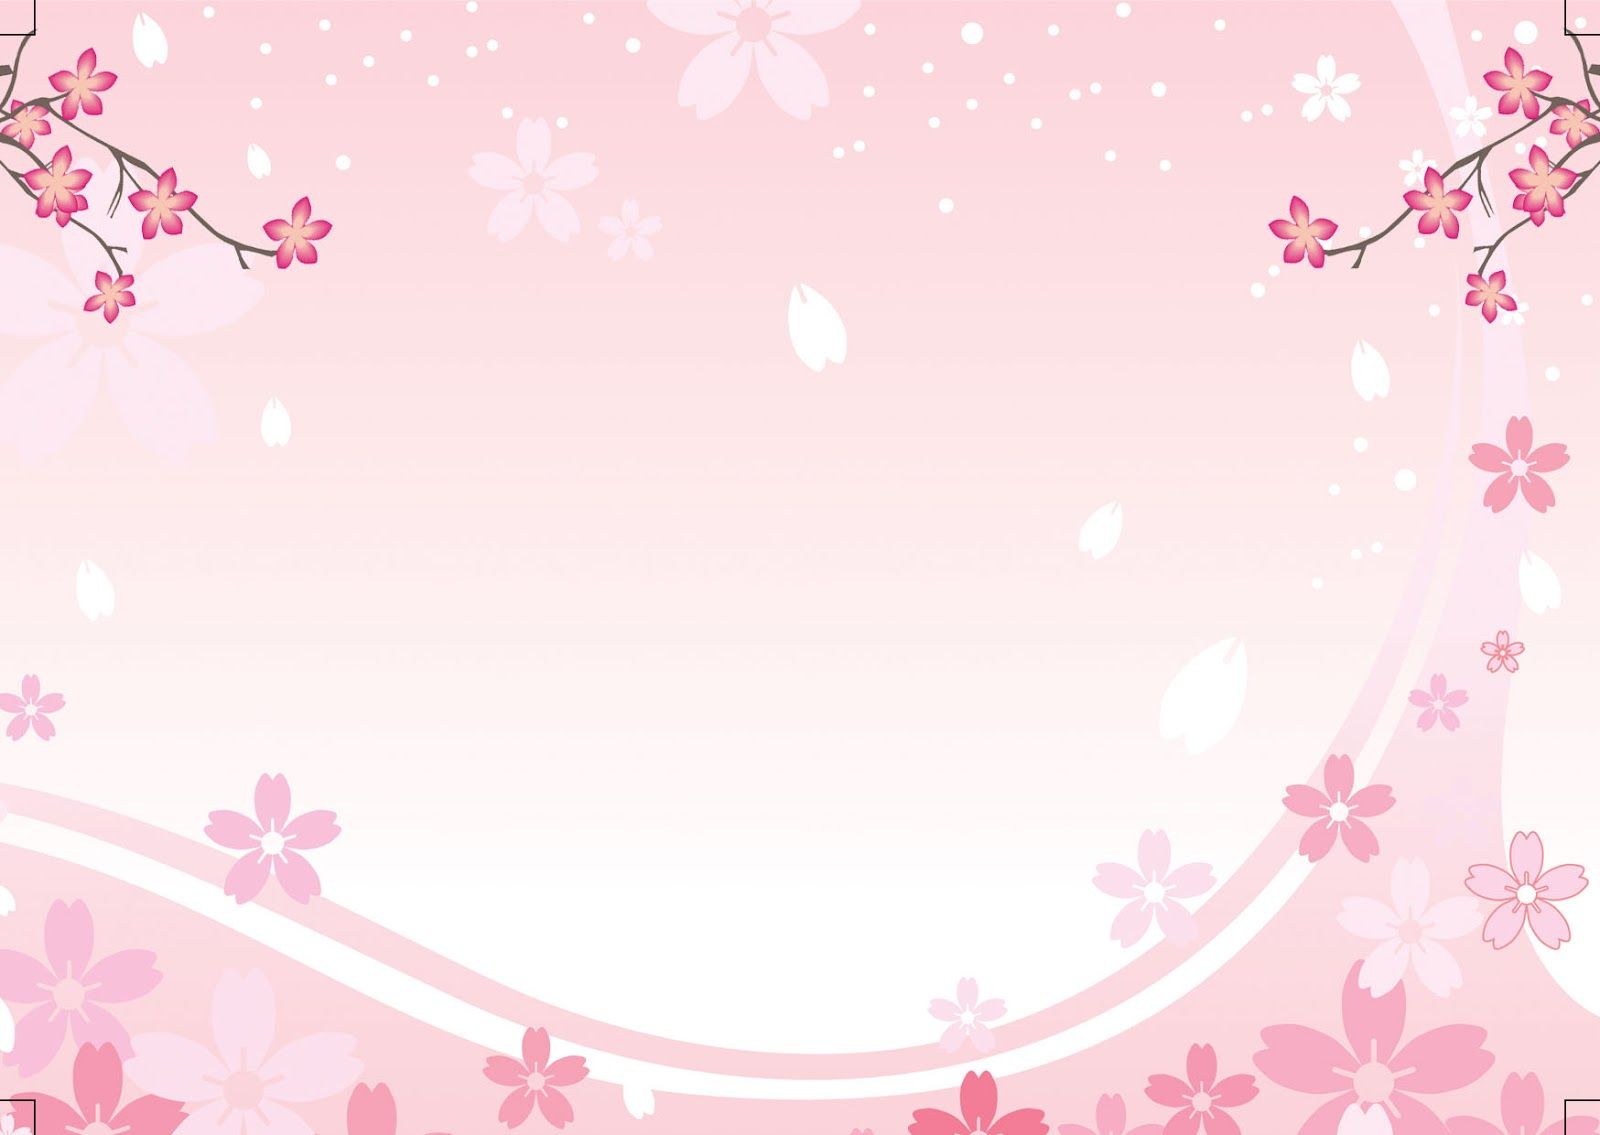 Background Kosong Undangan Aqiqah Motif Bunga Sakura Kartu